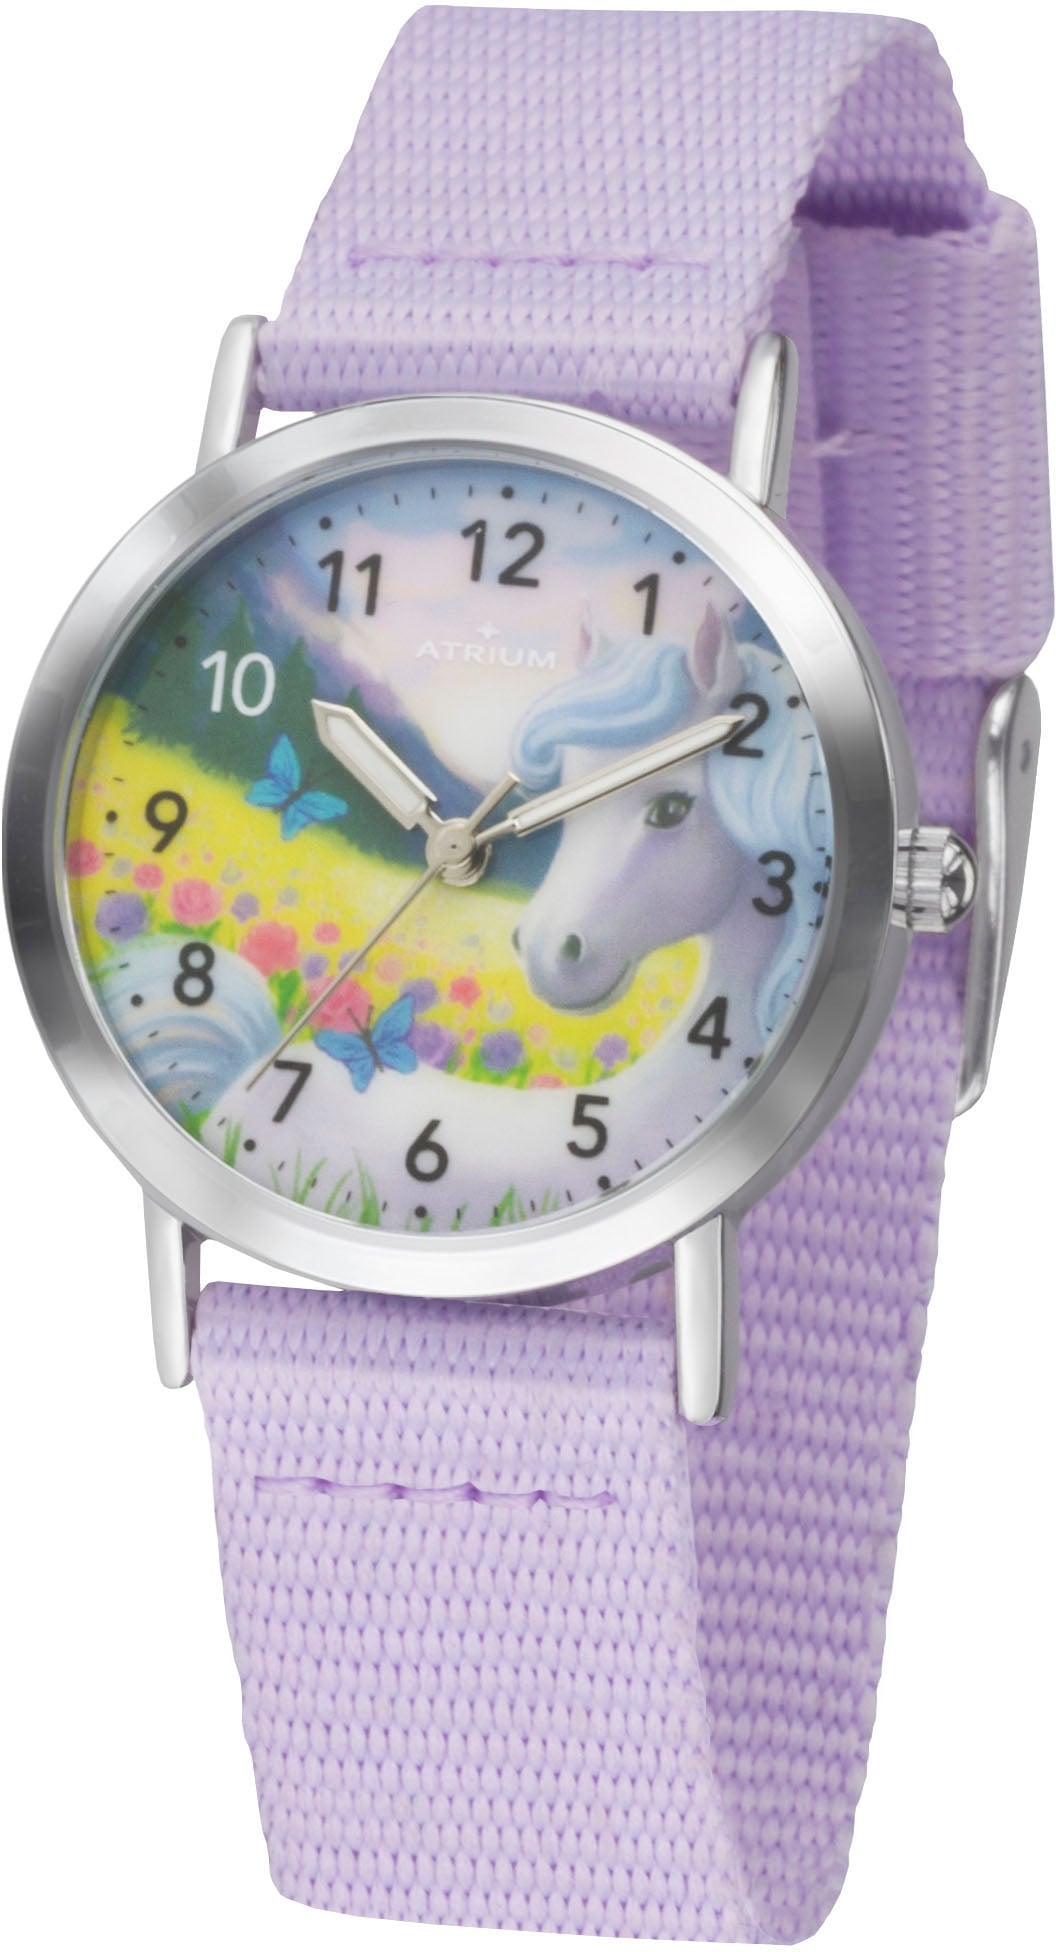 Atrium Quarzuhr »A44-18«, Armbanduhr, Kinderuhr, Mädchenenuhr, ideal auch als Geschenk